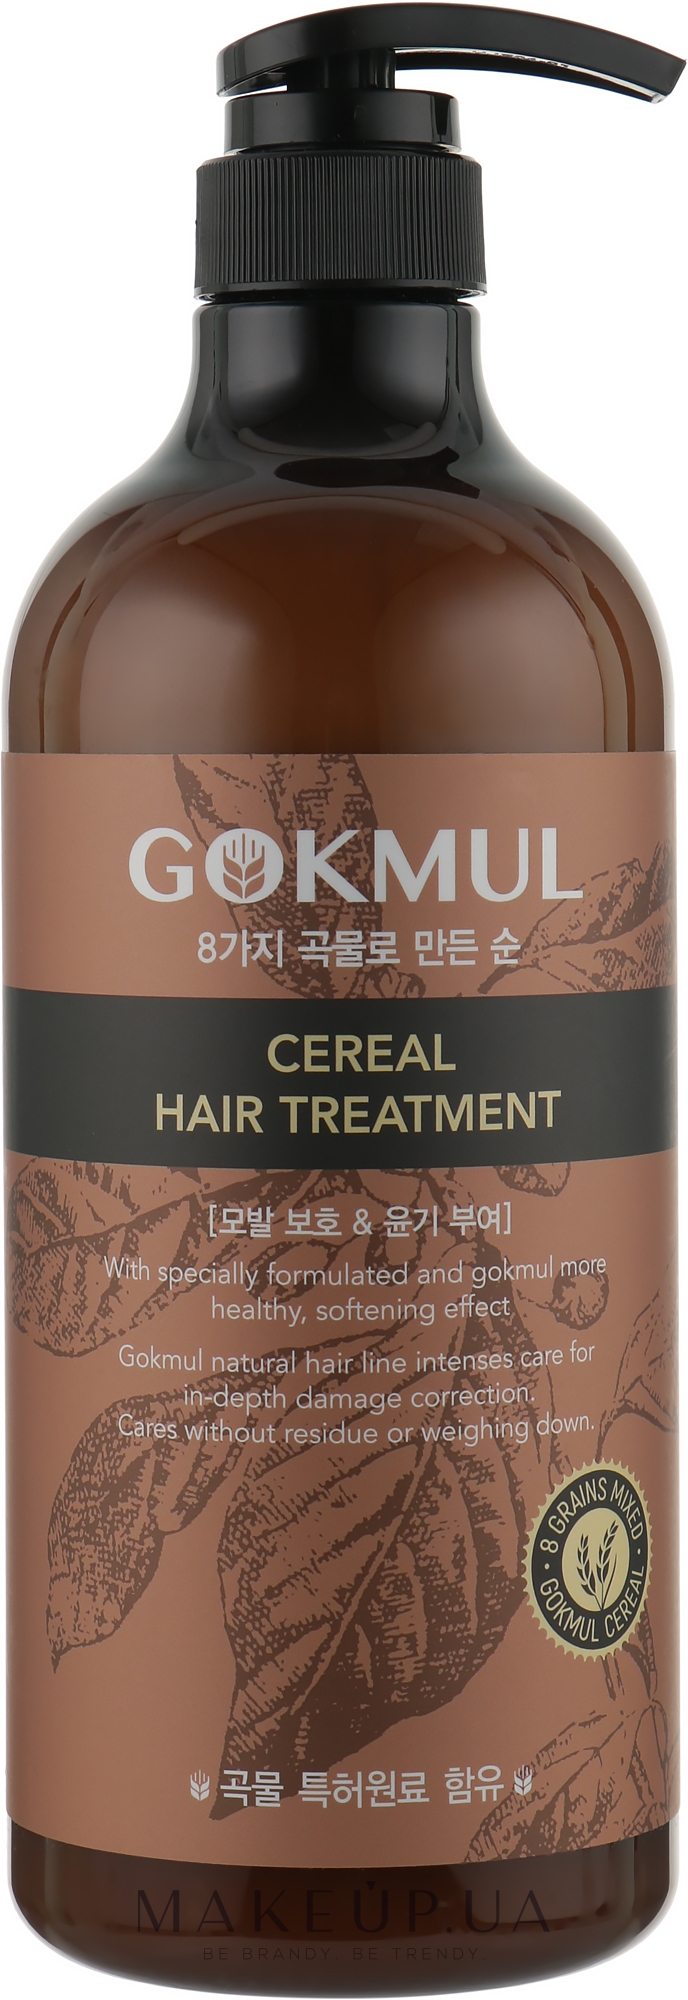 Восстанавливающая маска для волос со злаками - Enough Gokmul 8 Grains Mixed Cereal Hair Treatment — фото 1000ml